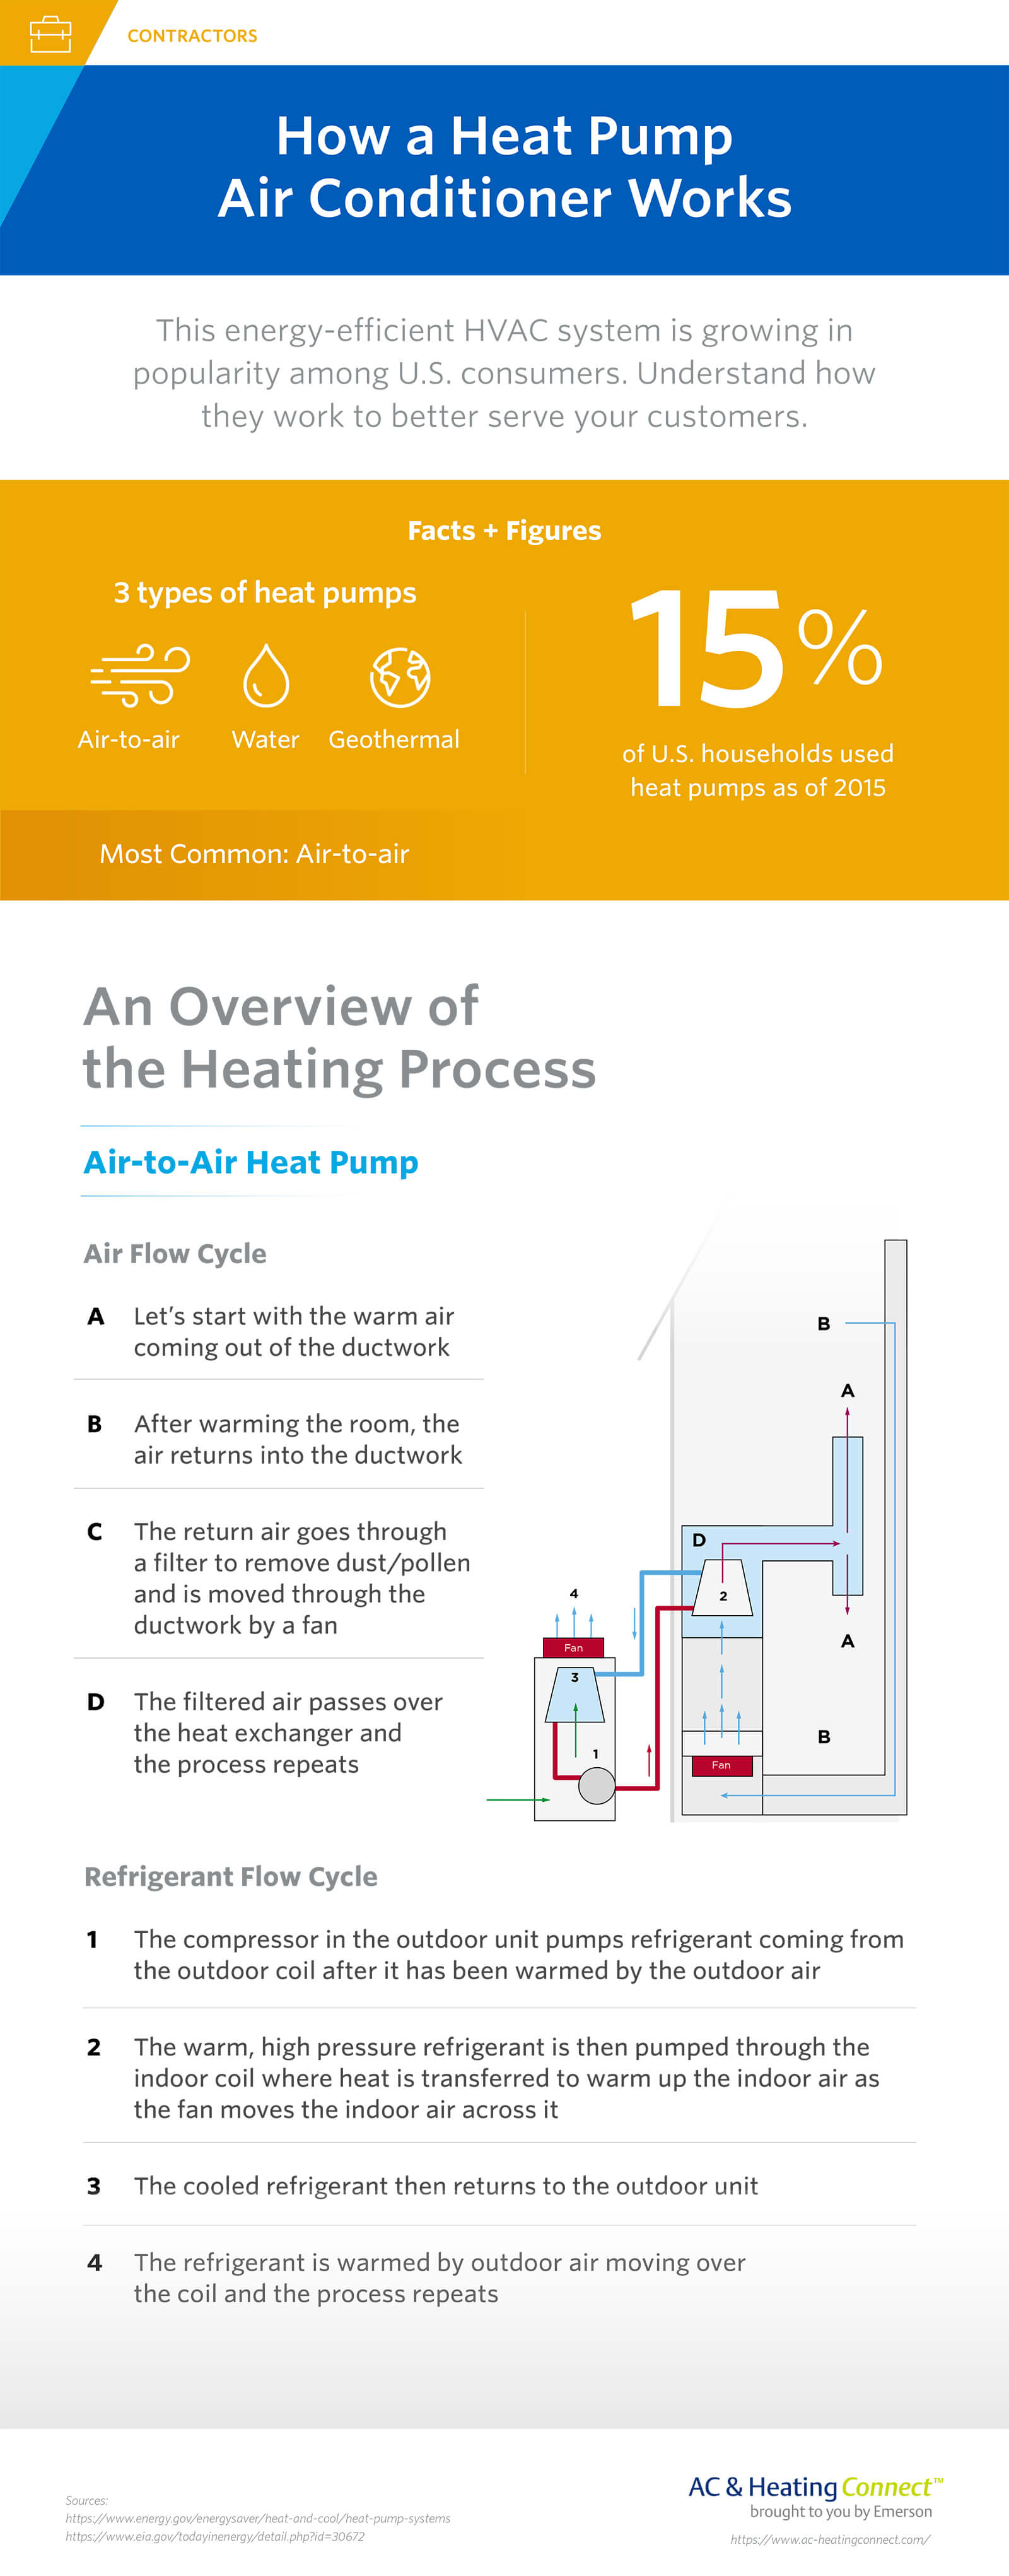 How heat pumps work